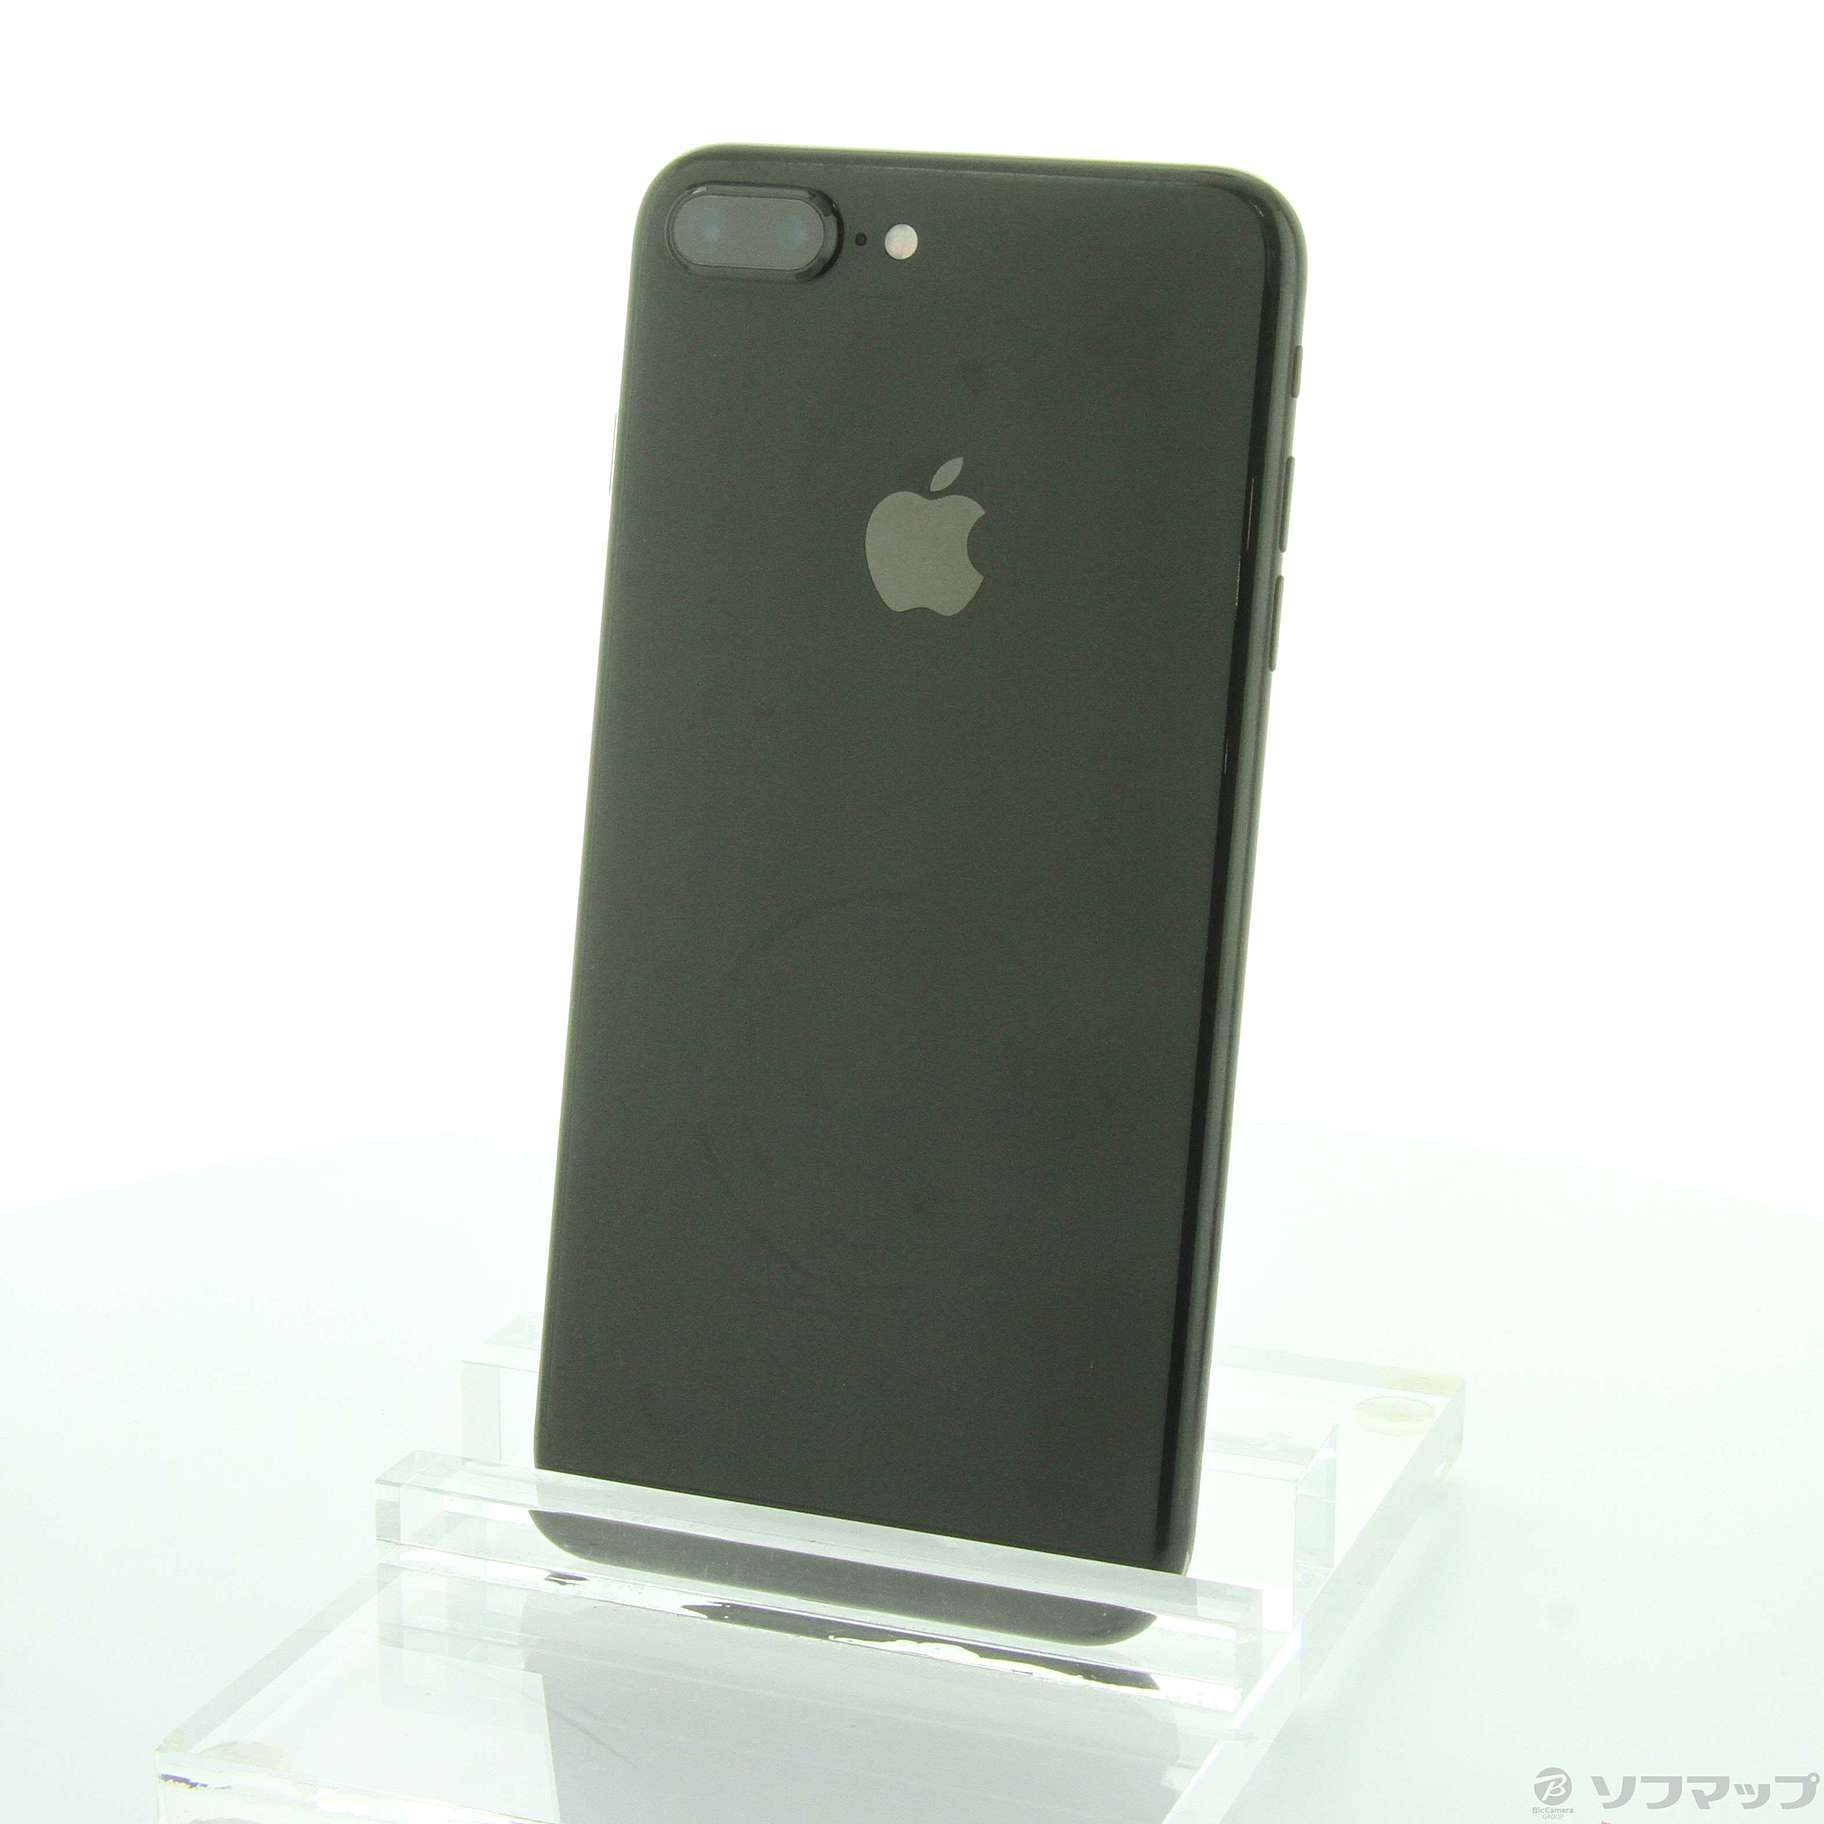 iPhone 7 plus 128GB JETBLACK SIMフリー